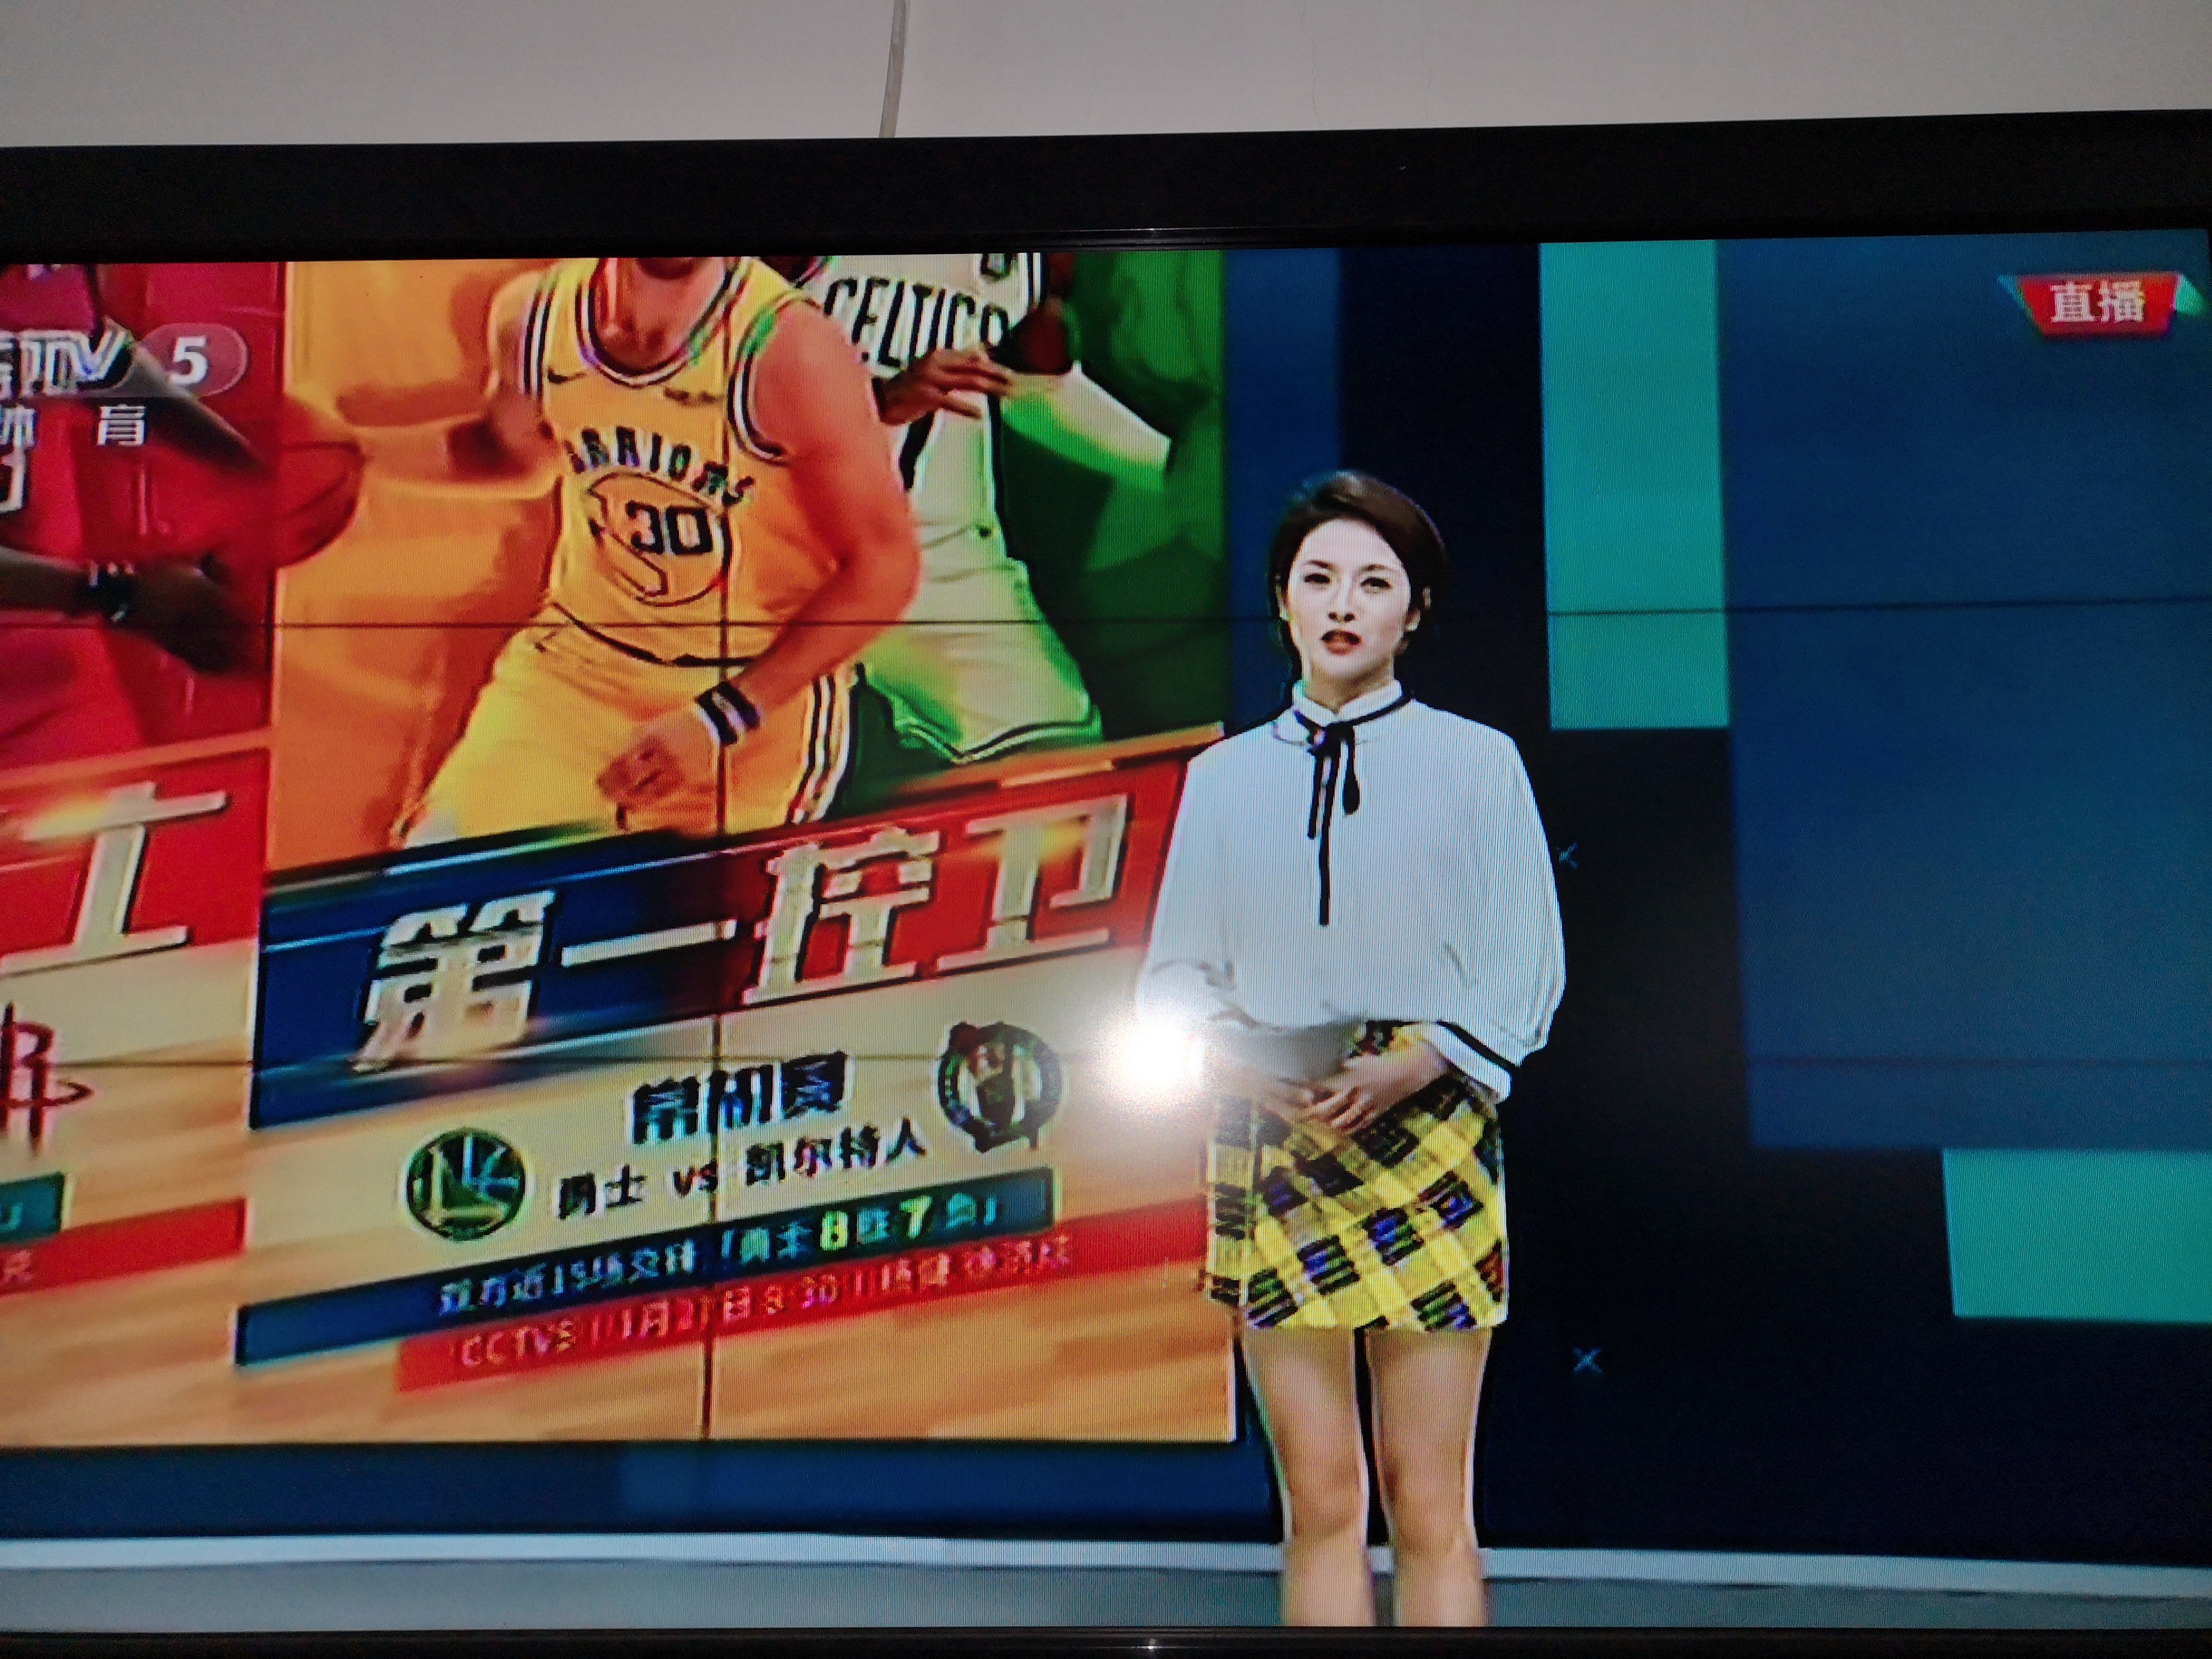 现在cctv的nba直播也有了美女主播,刘天伊曾被认为是最美校花